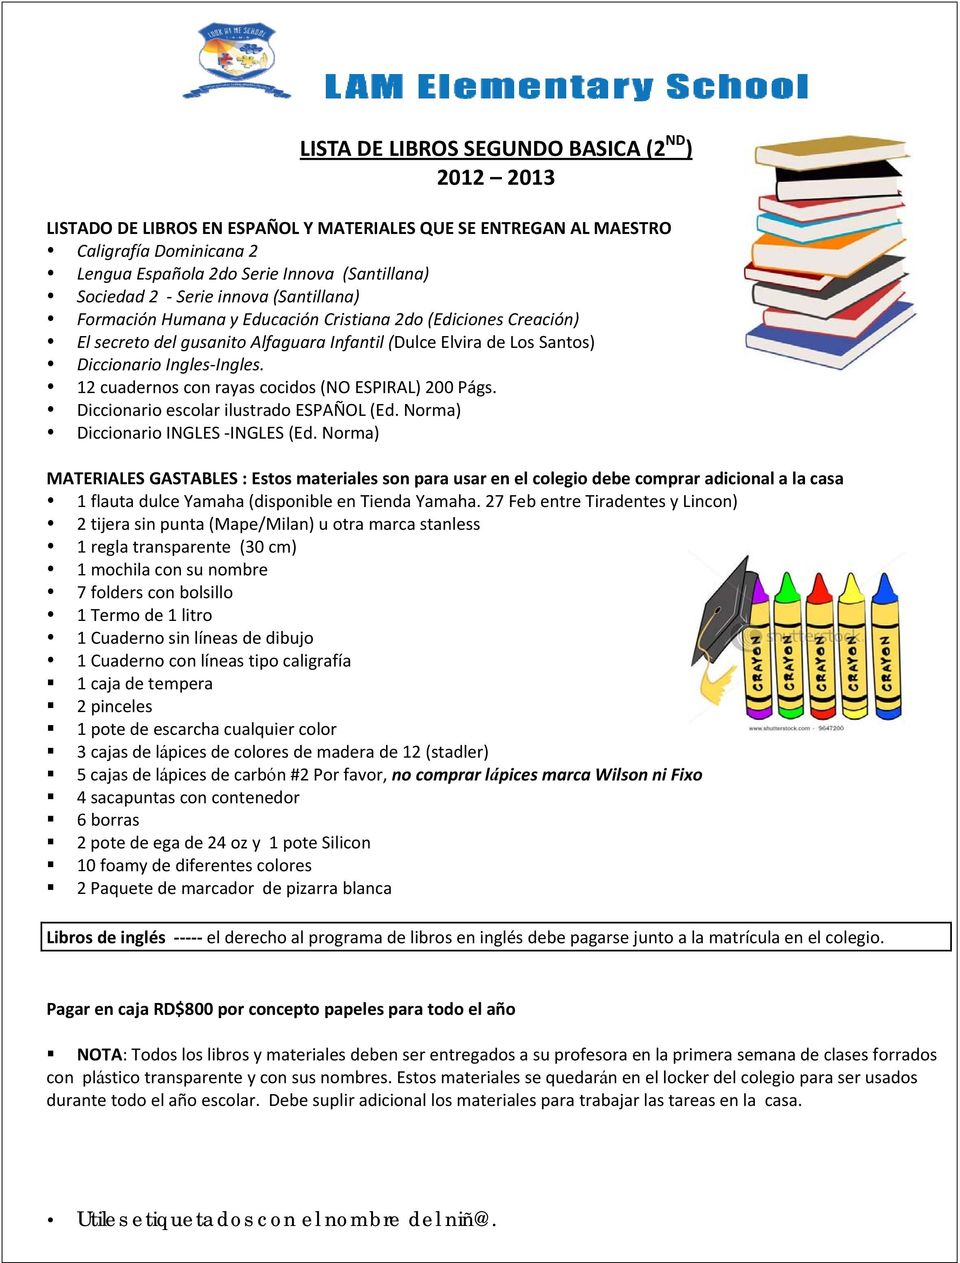 Diccionario escolar ilustrado ESPAÑOL (Ed. Norma) Diccionario INGLES INGLES (Ed.